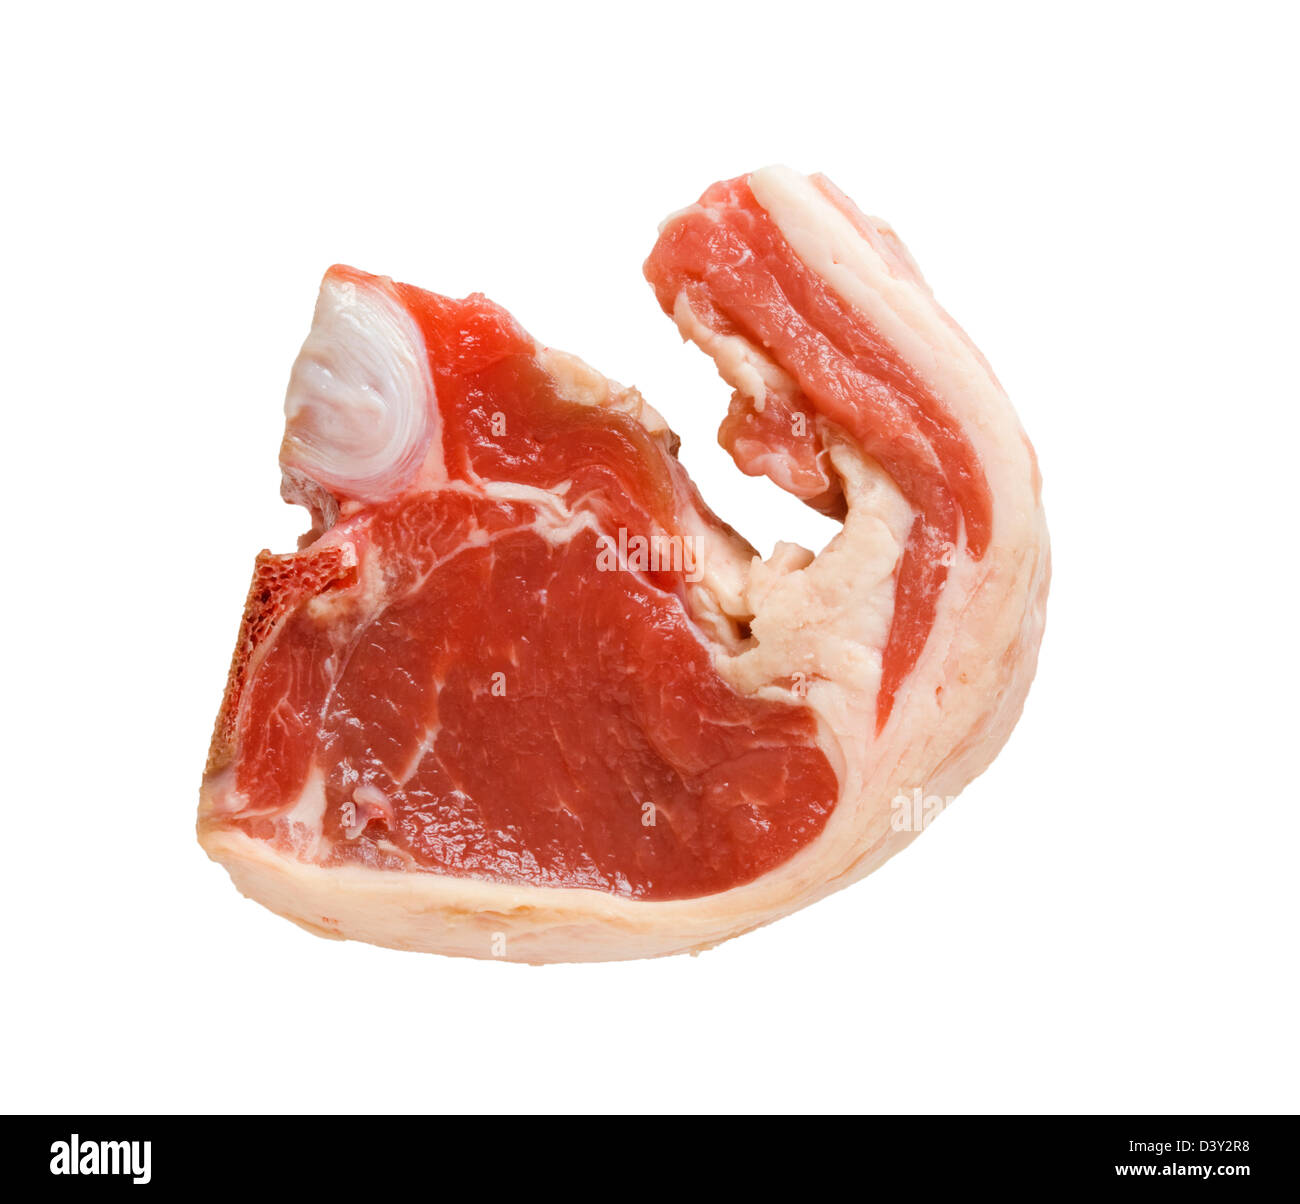 Lamb chop. Stock Photo